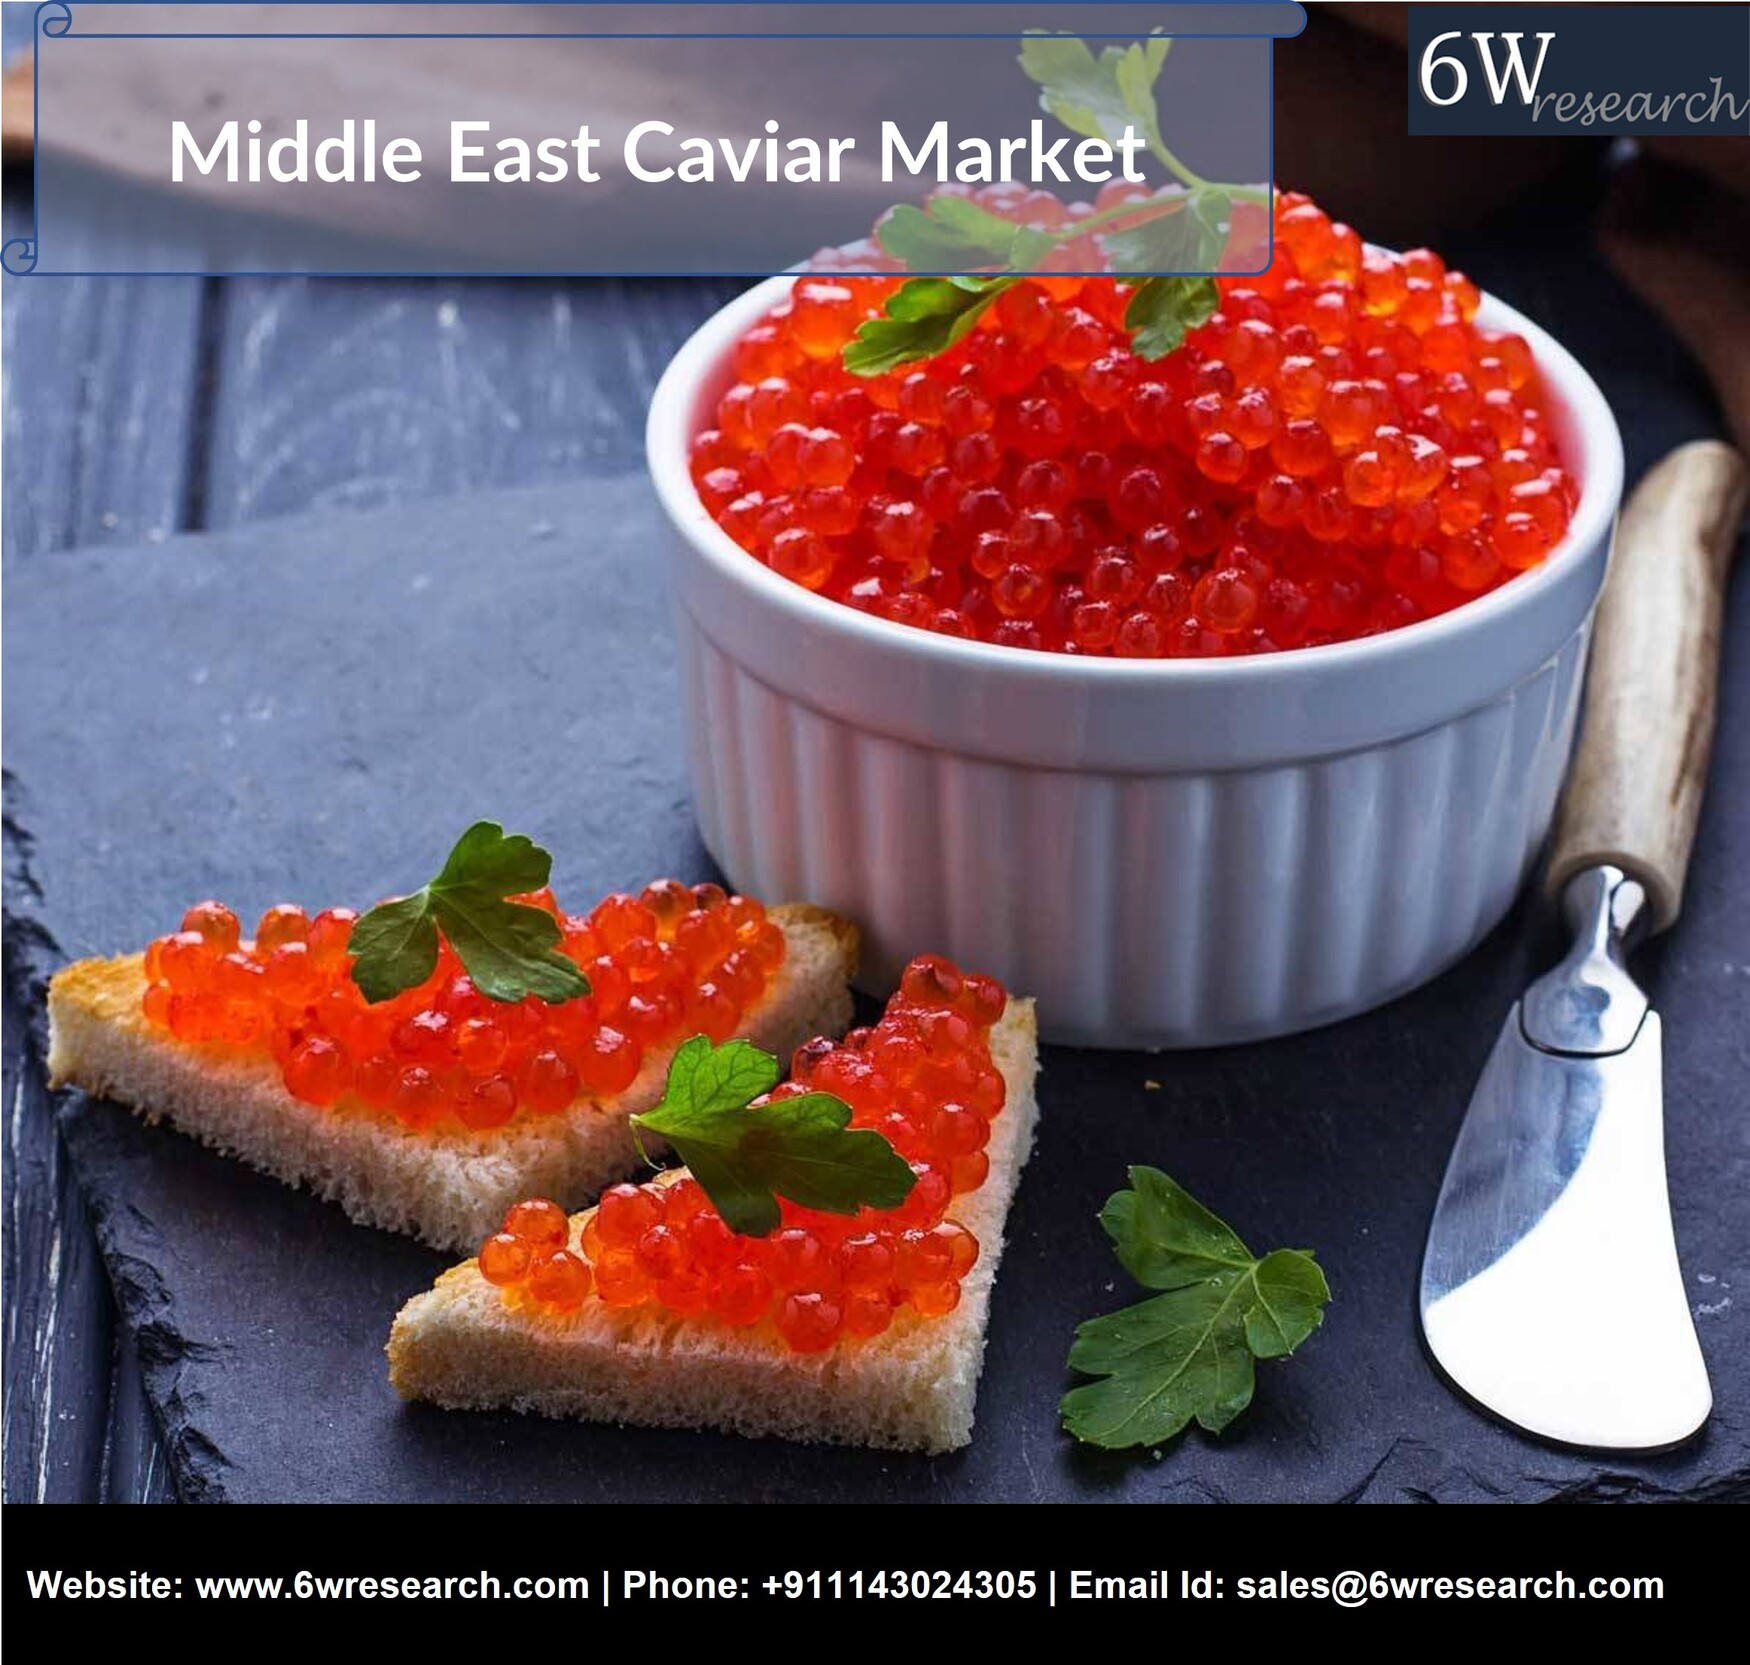 Middle East Caviar Market